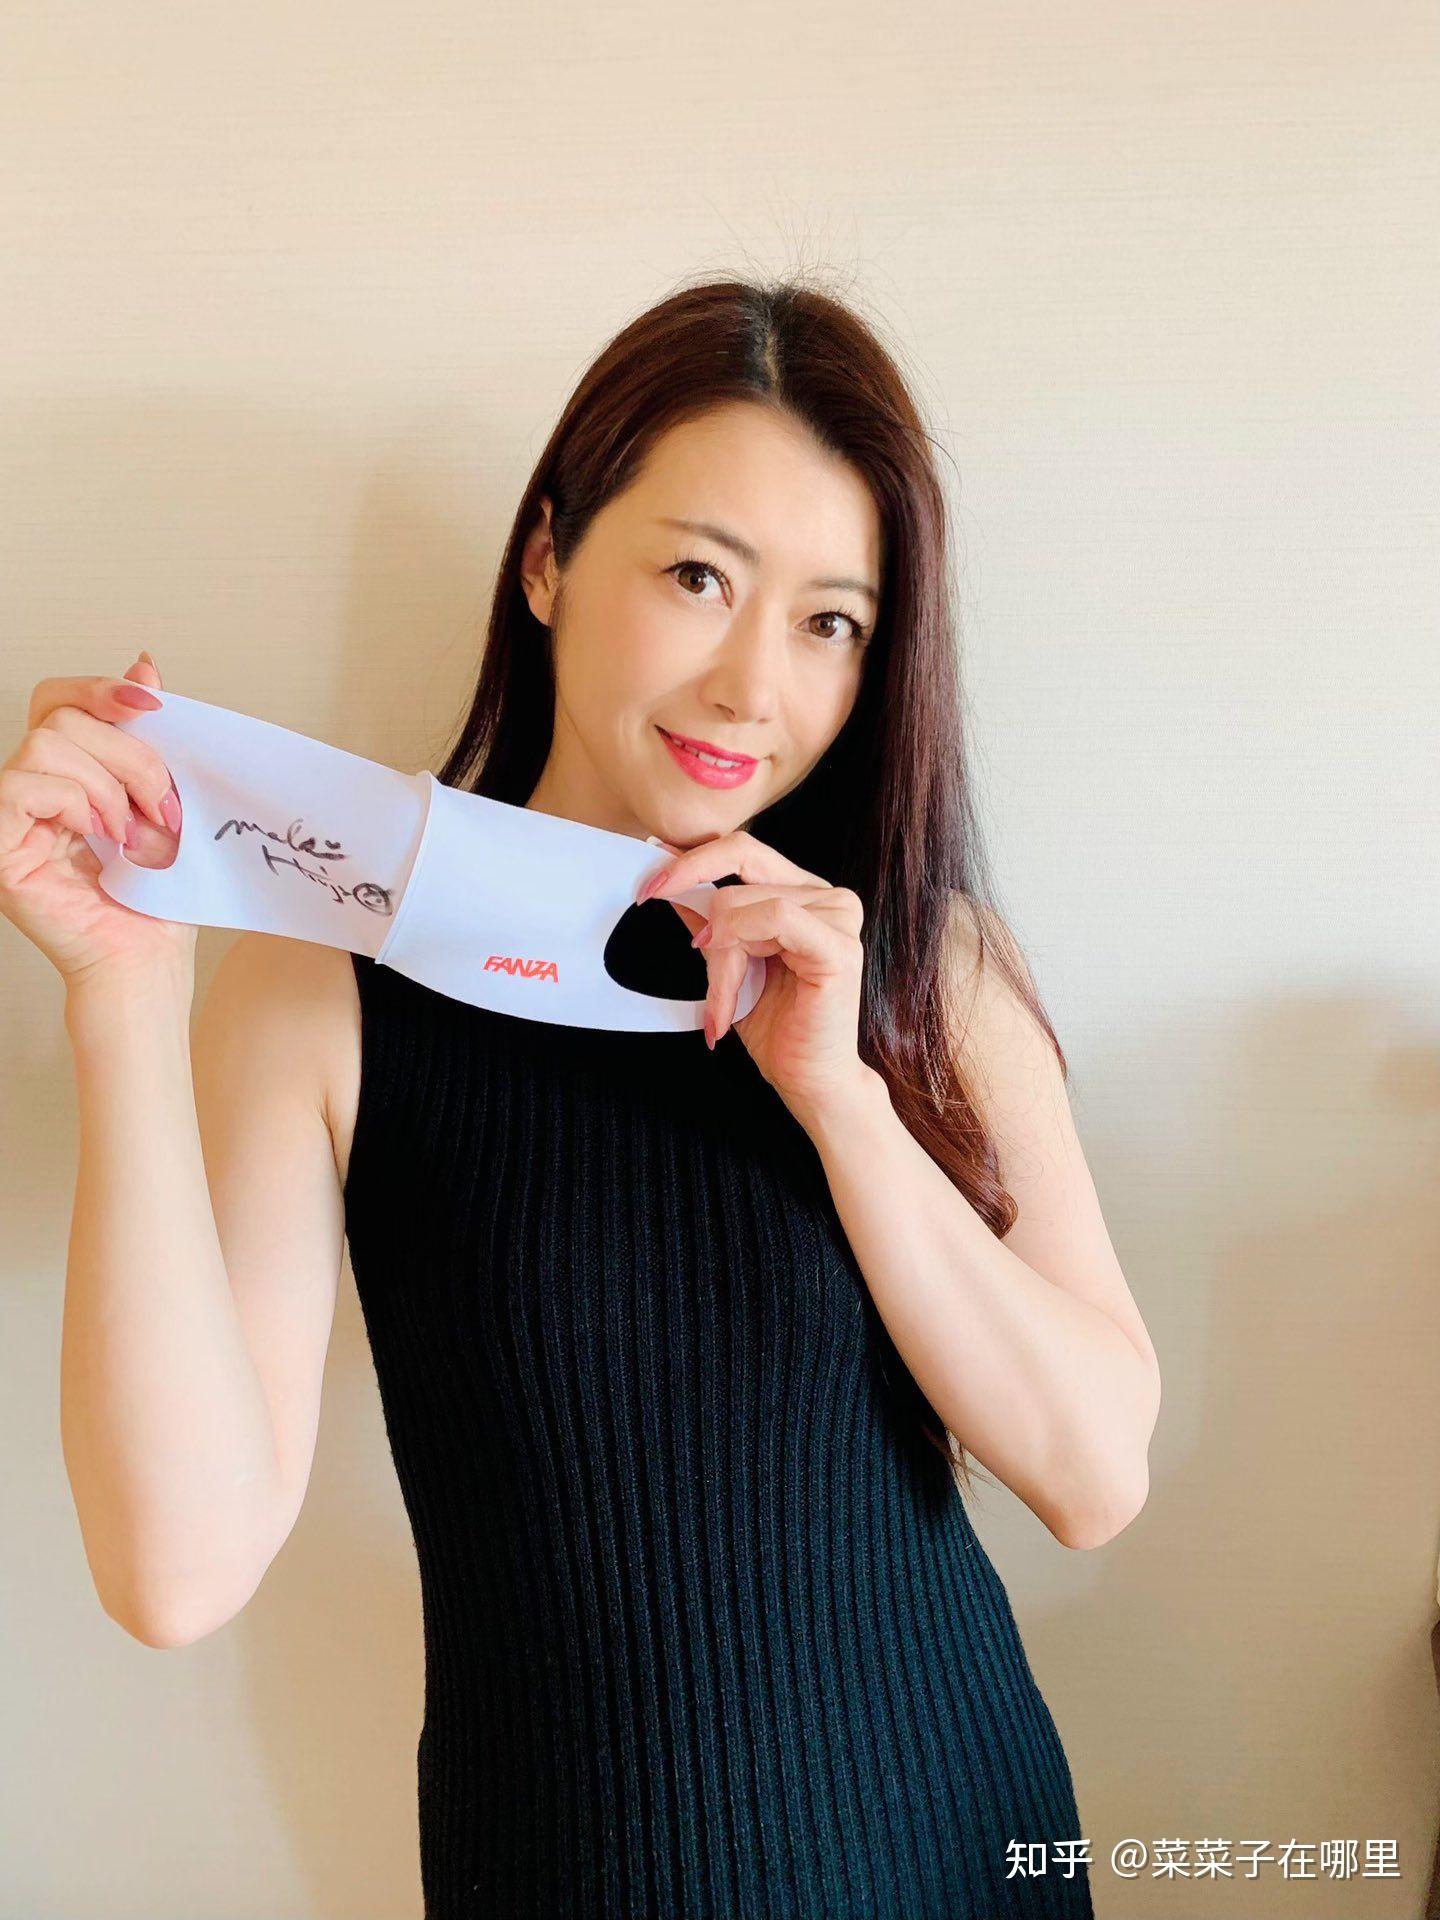 日本演员 北条麻妃漂亮小姐姐2022年3月精选照片集 - 知乎